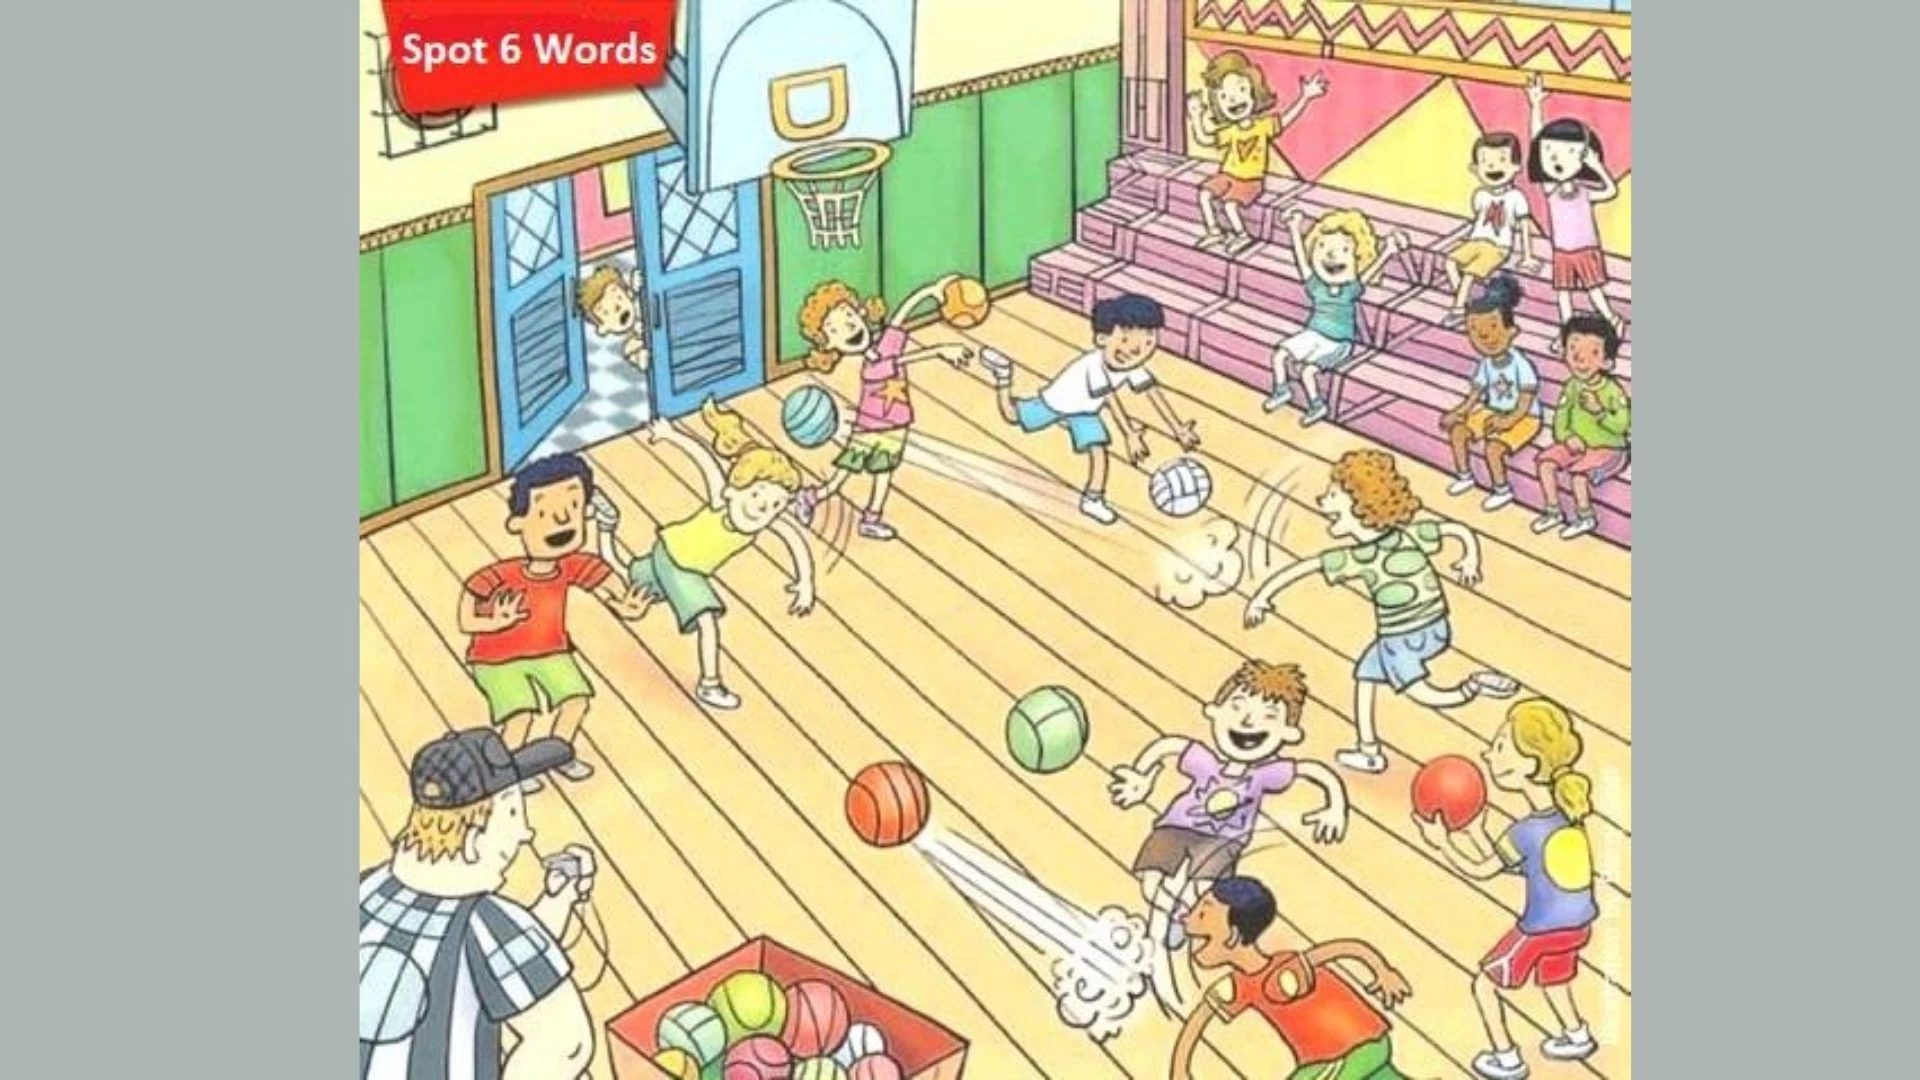 Können Sie die 6 Wörter, die im Bild des Basketballplatzes versteckt sind, innerhalb von 10 Minuten erkennen?